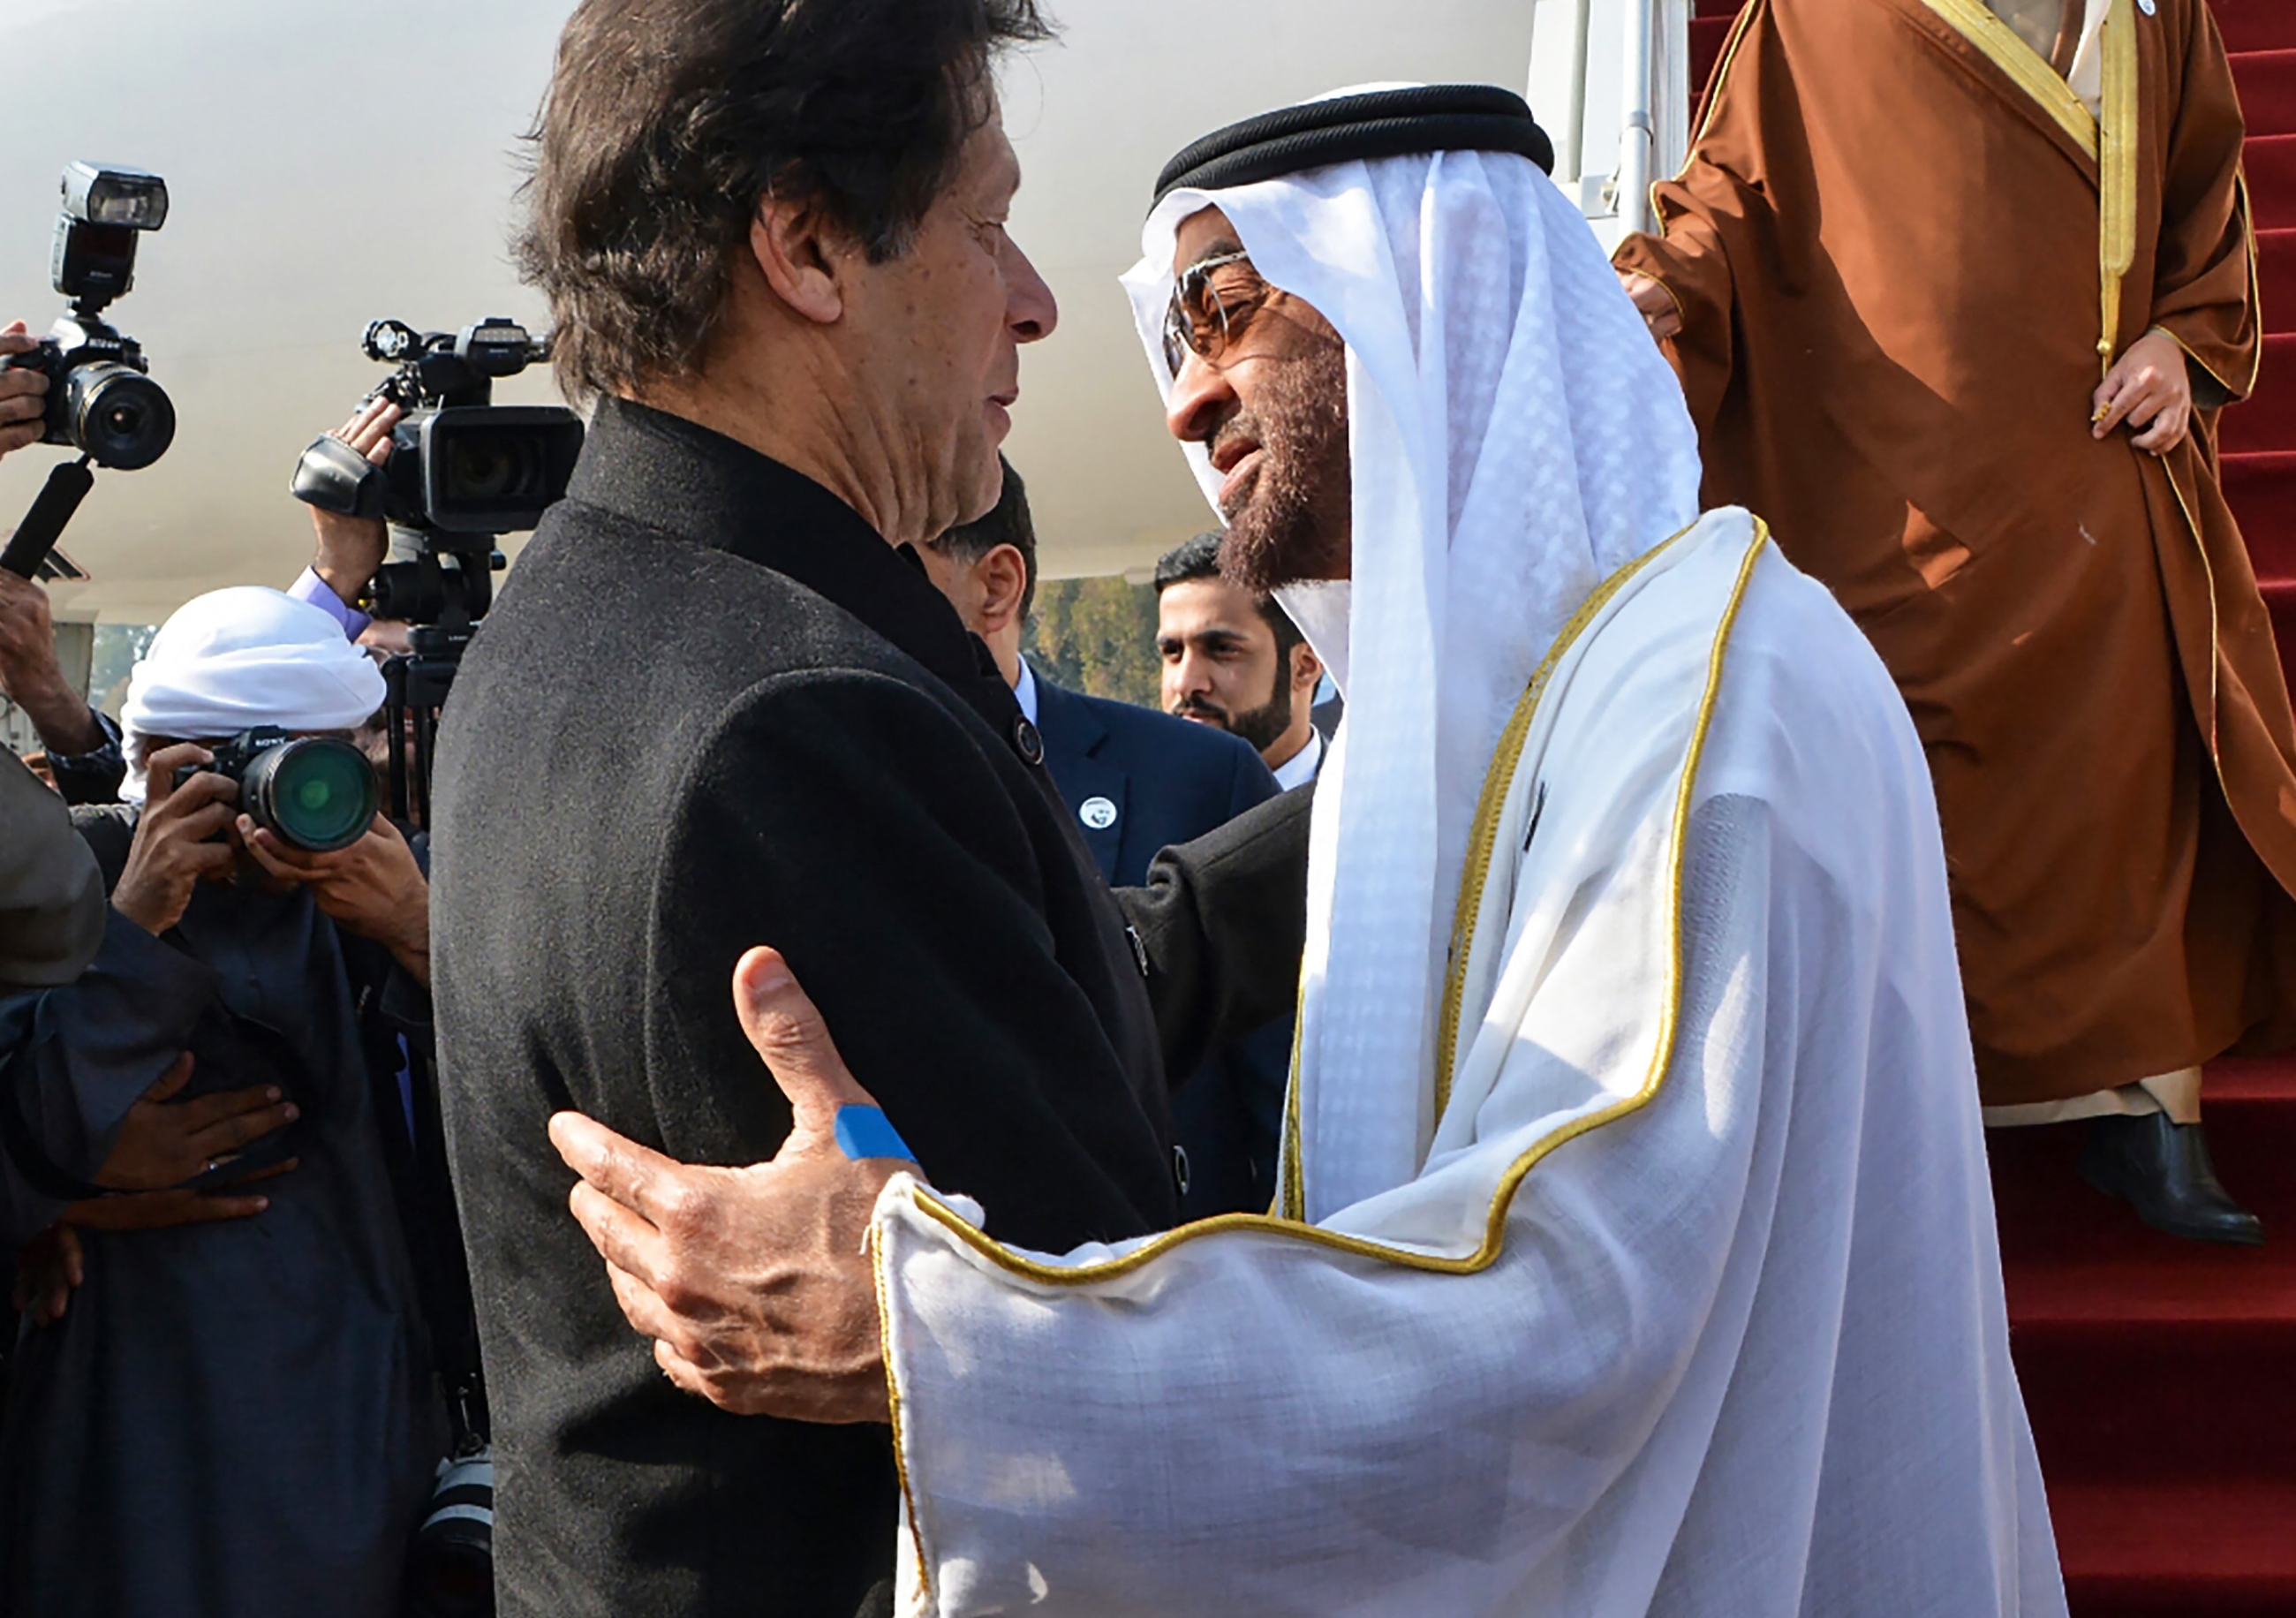 Le Premier ministre du Pakistan Imran Khan (à gauche) accueille le prince héritier d’Abou Dabi, le cheikh Mohammed ben Zayed al-Nahyane (à droite), à son arrivée sur la base aérienne de Nur Khan à Islamabad, le 6 janvier 2019 (AFP)